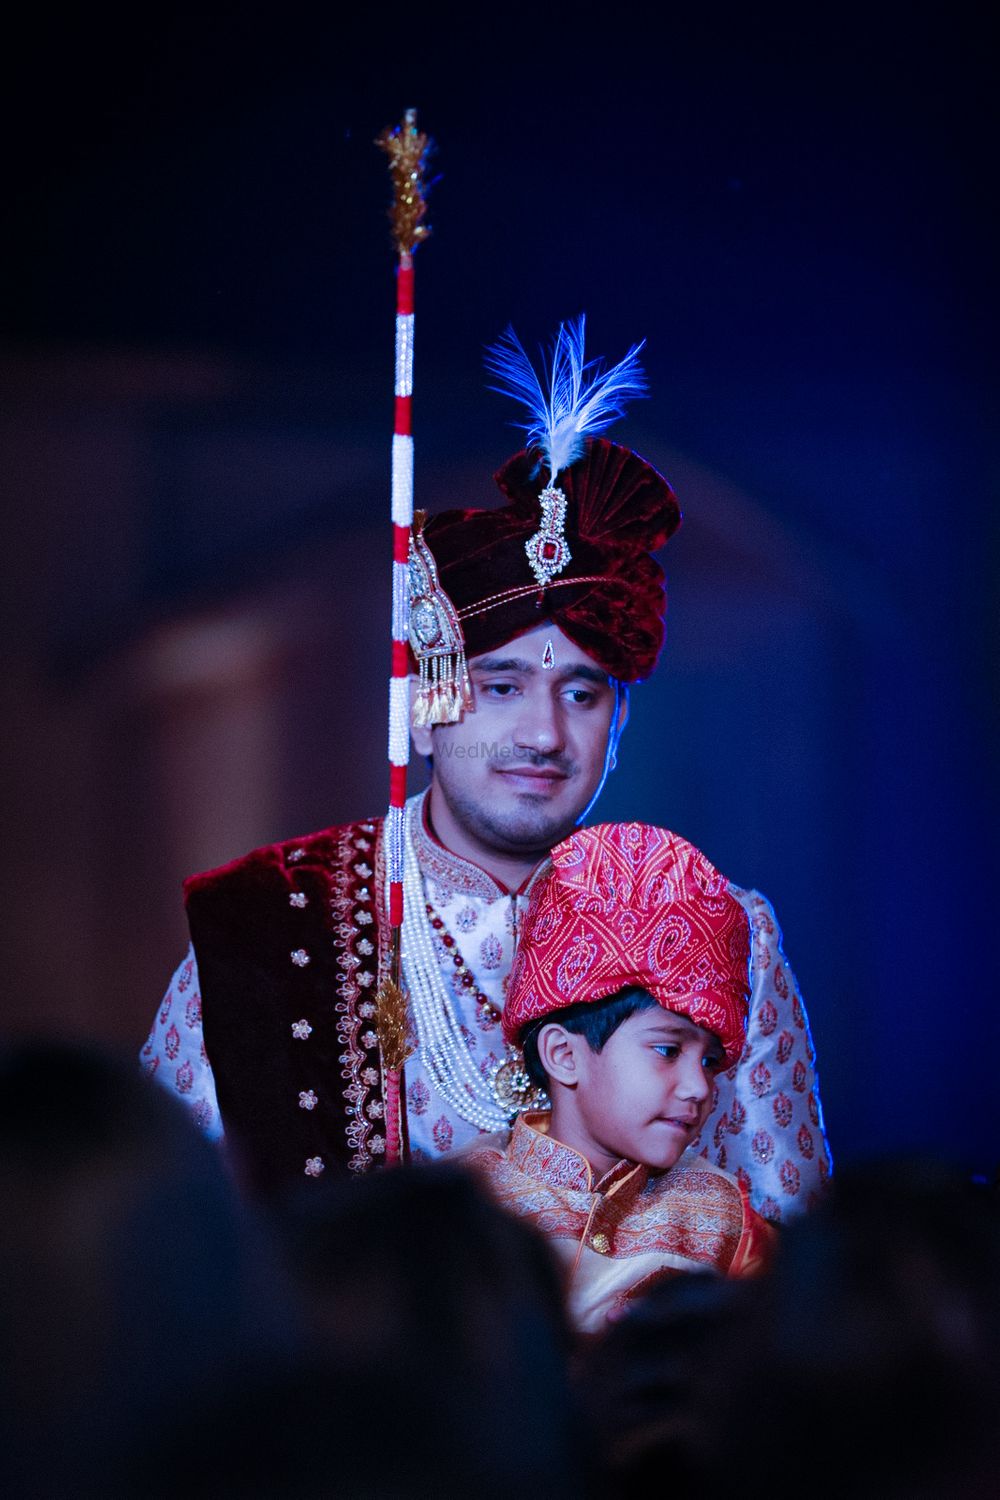 Photo From wedding Dr.Rishabh & Dr.Vidhi - By Kshitiz Gautam Production